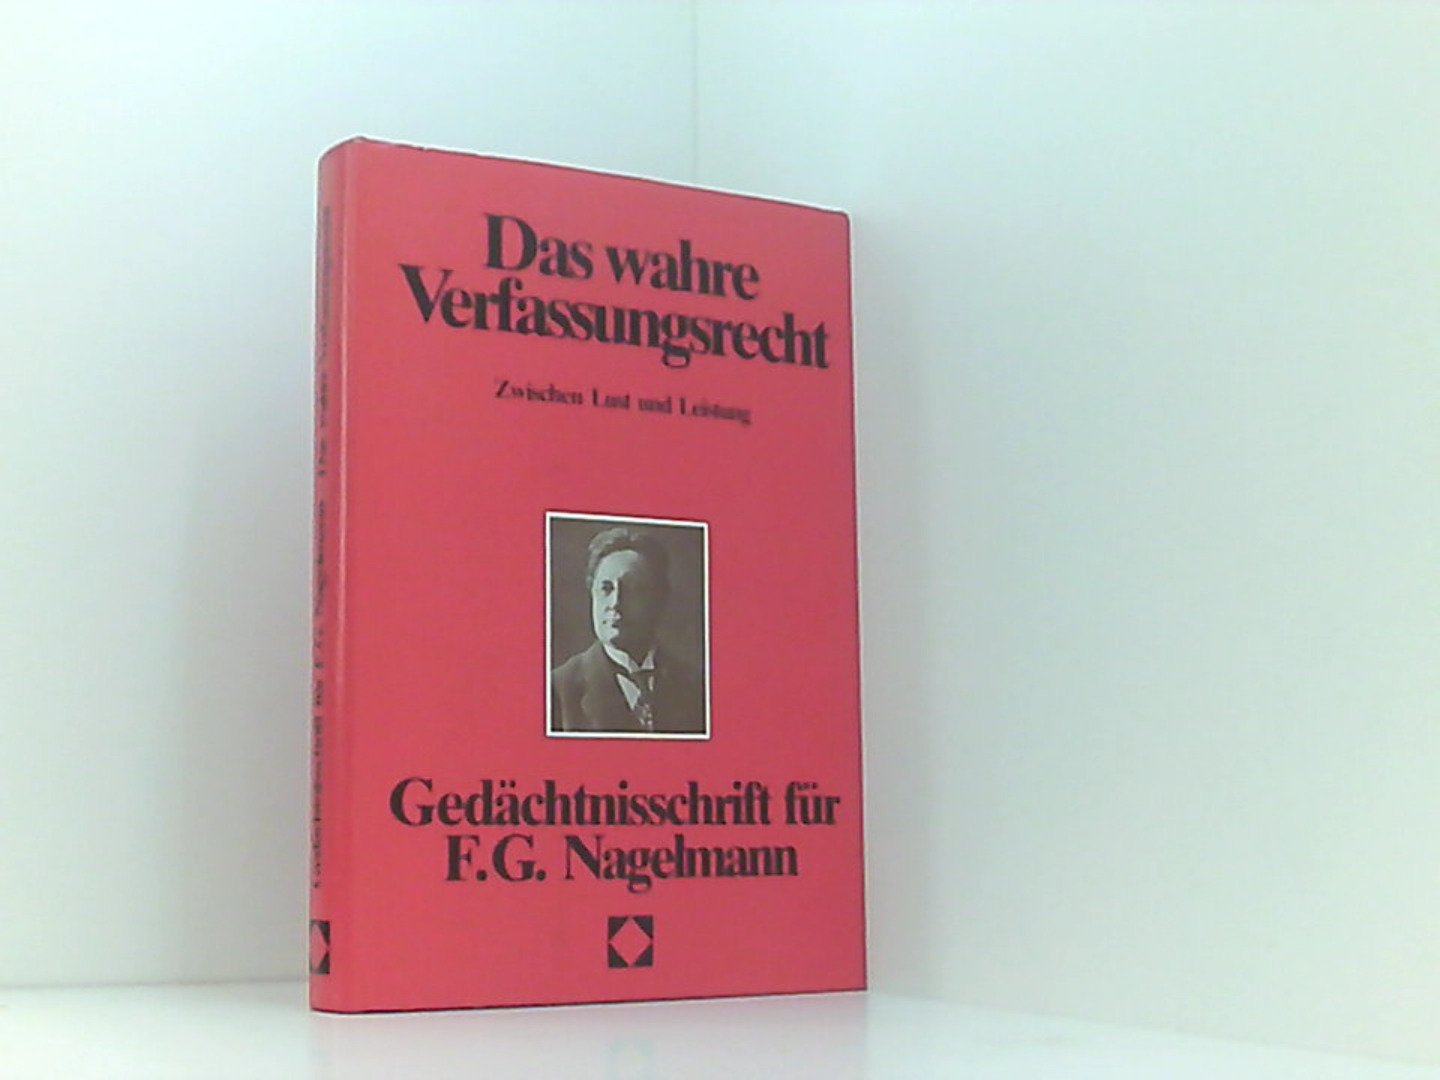 Das wahre Verfassungsrecht - Zwischen Lust und Leistung - Dieter C. Umbach, (Hrsg.)